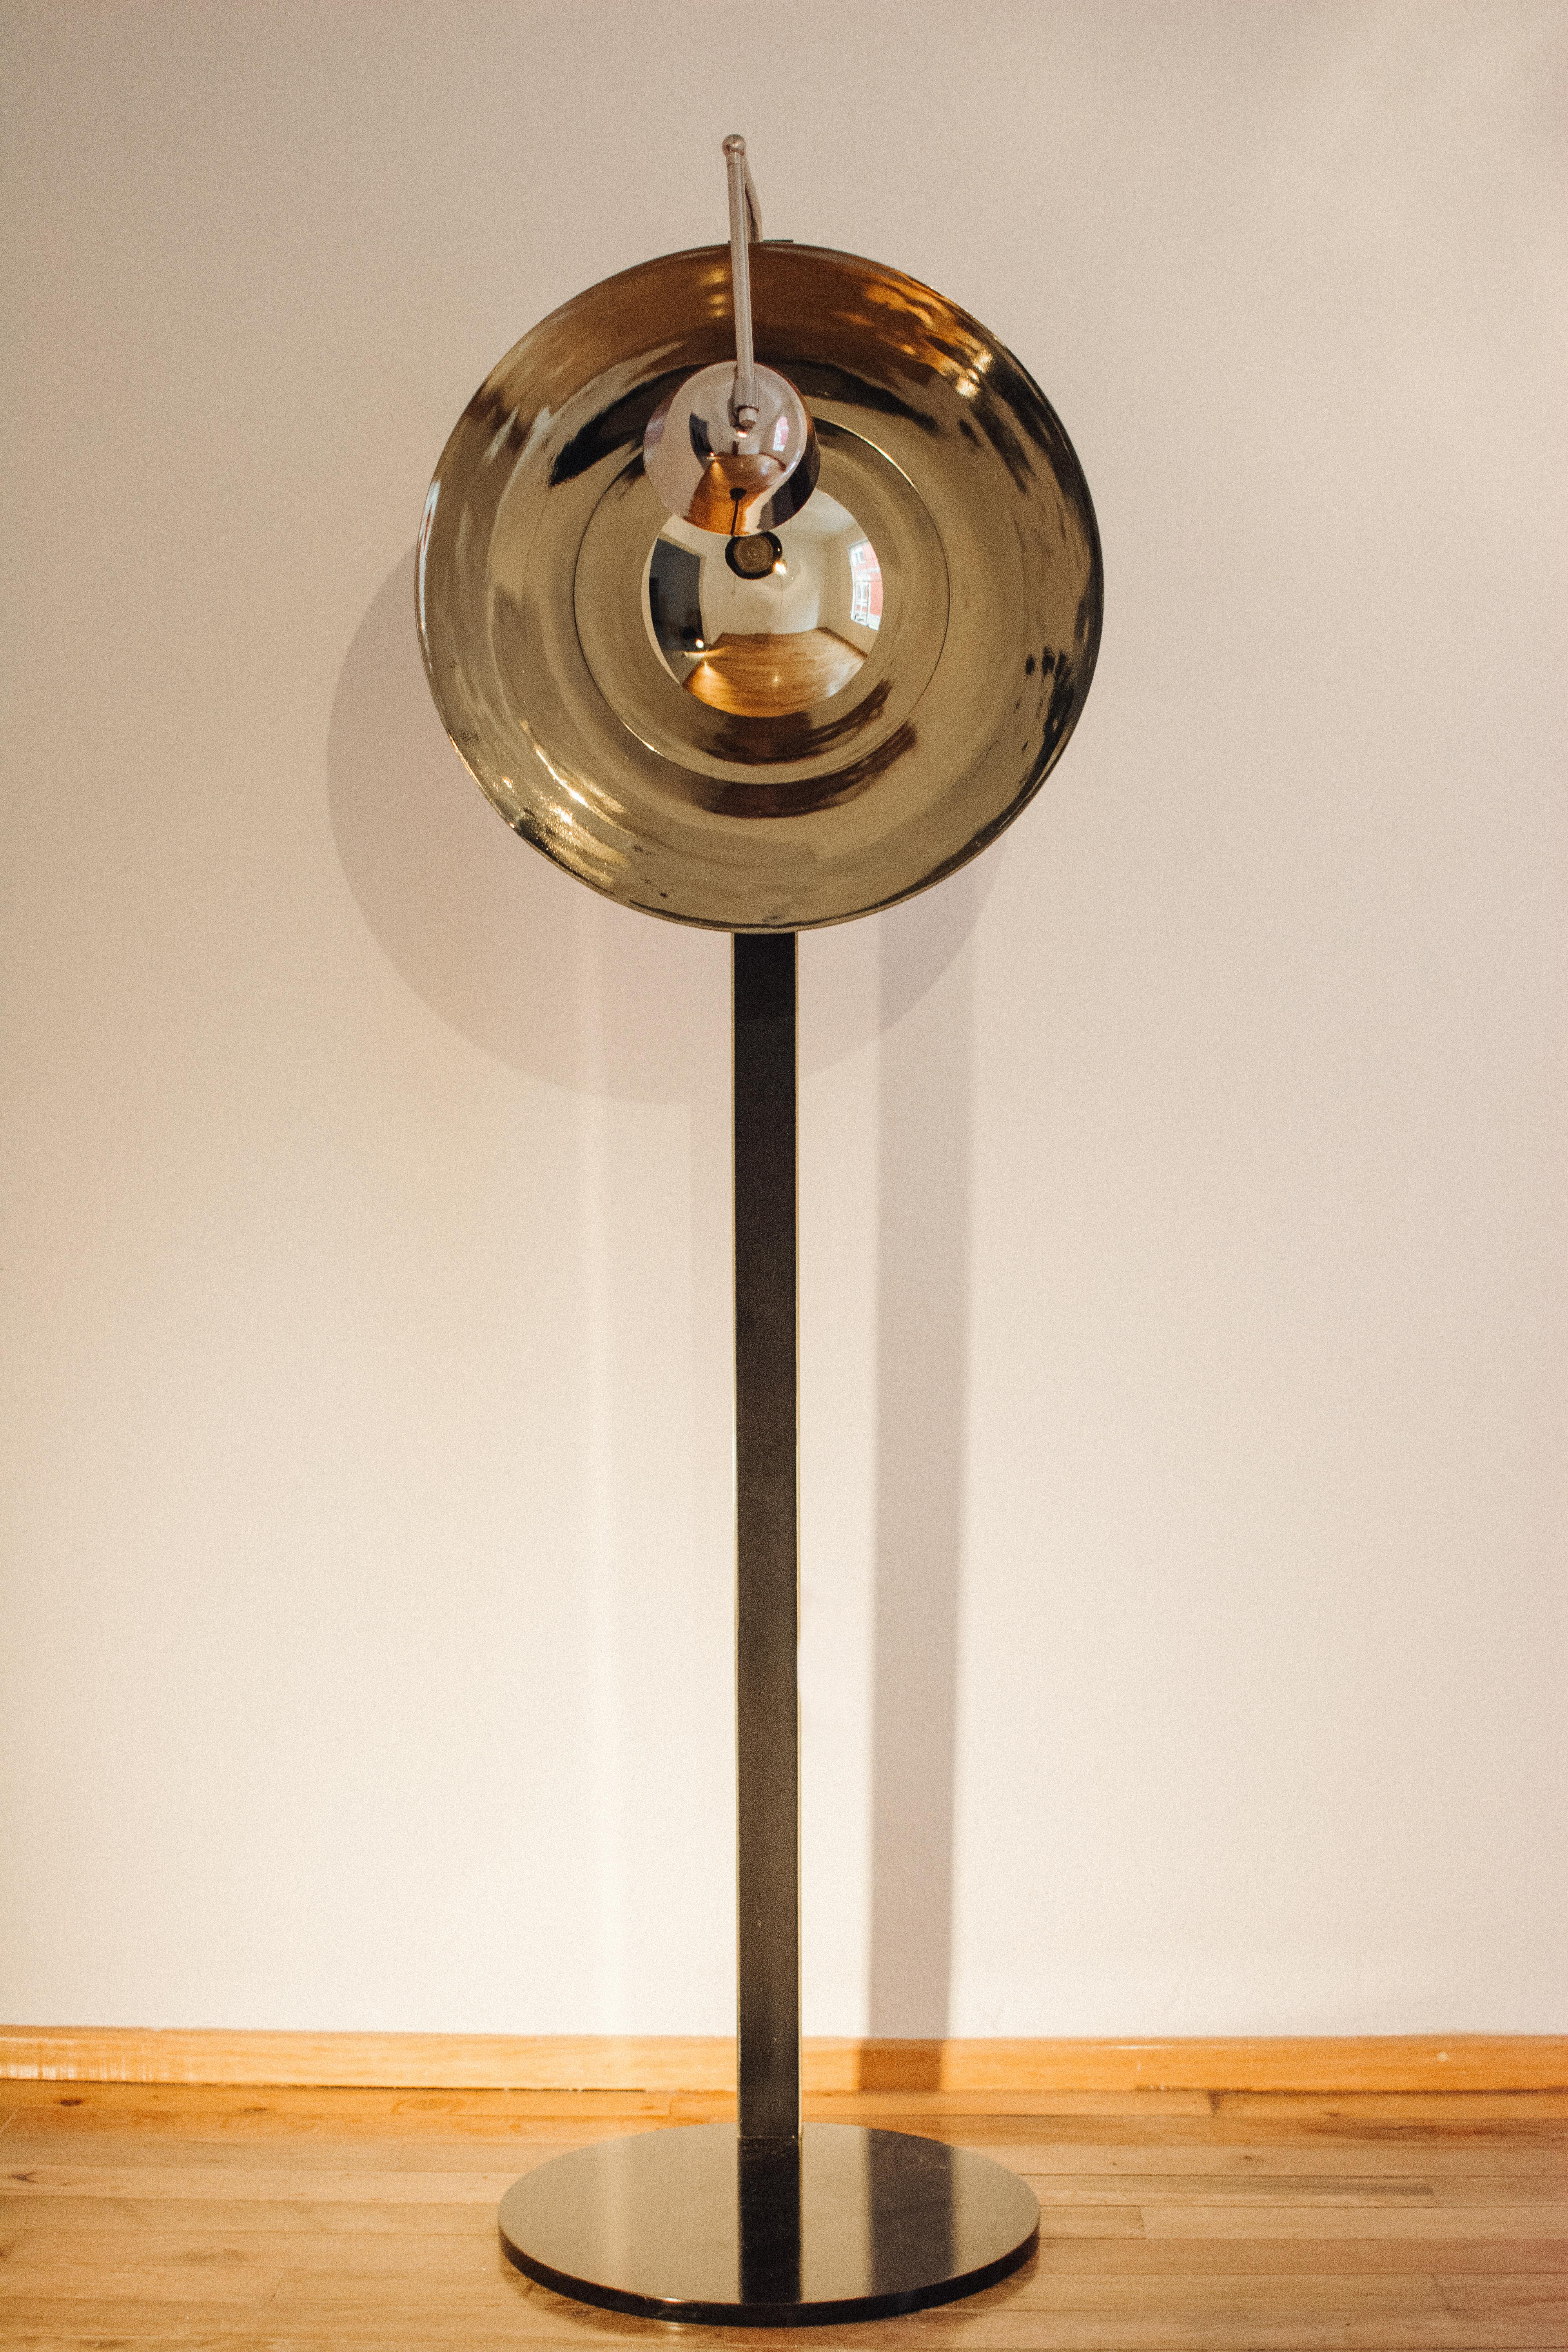 Lampadaire Yacaman par Sombra Design
Edition limitée à 25 exemplaires
Dimensions : D 48 x L 60 x H 193 cm
MATERIAL : Laiton, acier nickelé.

Toutes nos lampes peuvent être câblées en fonction de chaque pays. Si elle est vendue aux États-Unis, elle